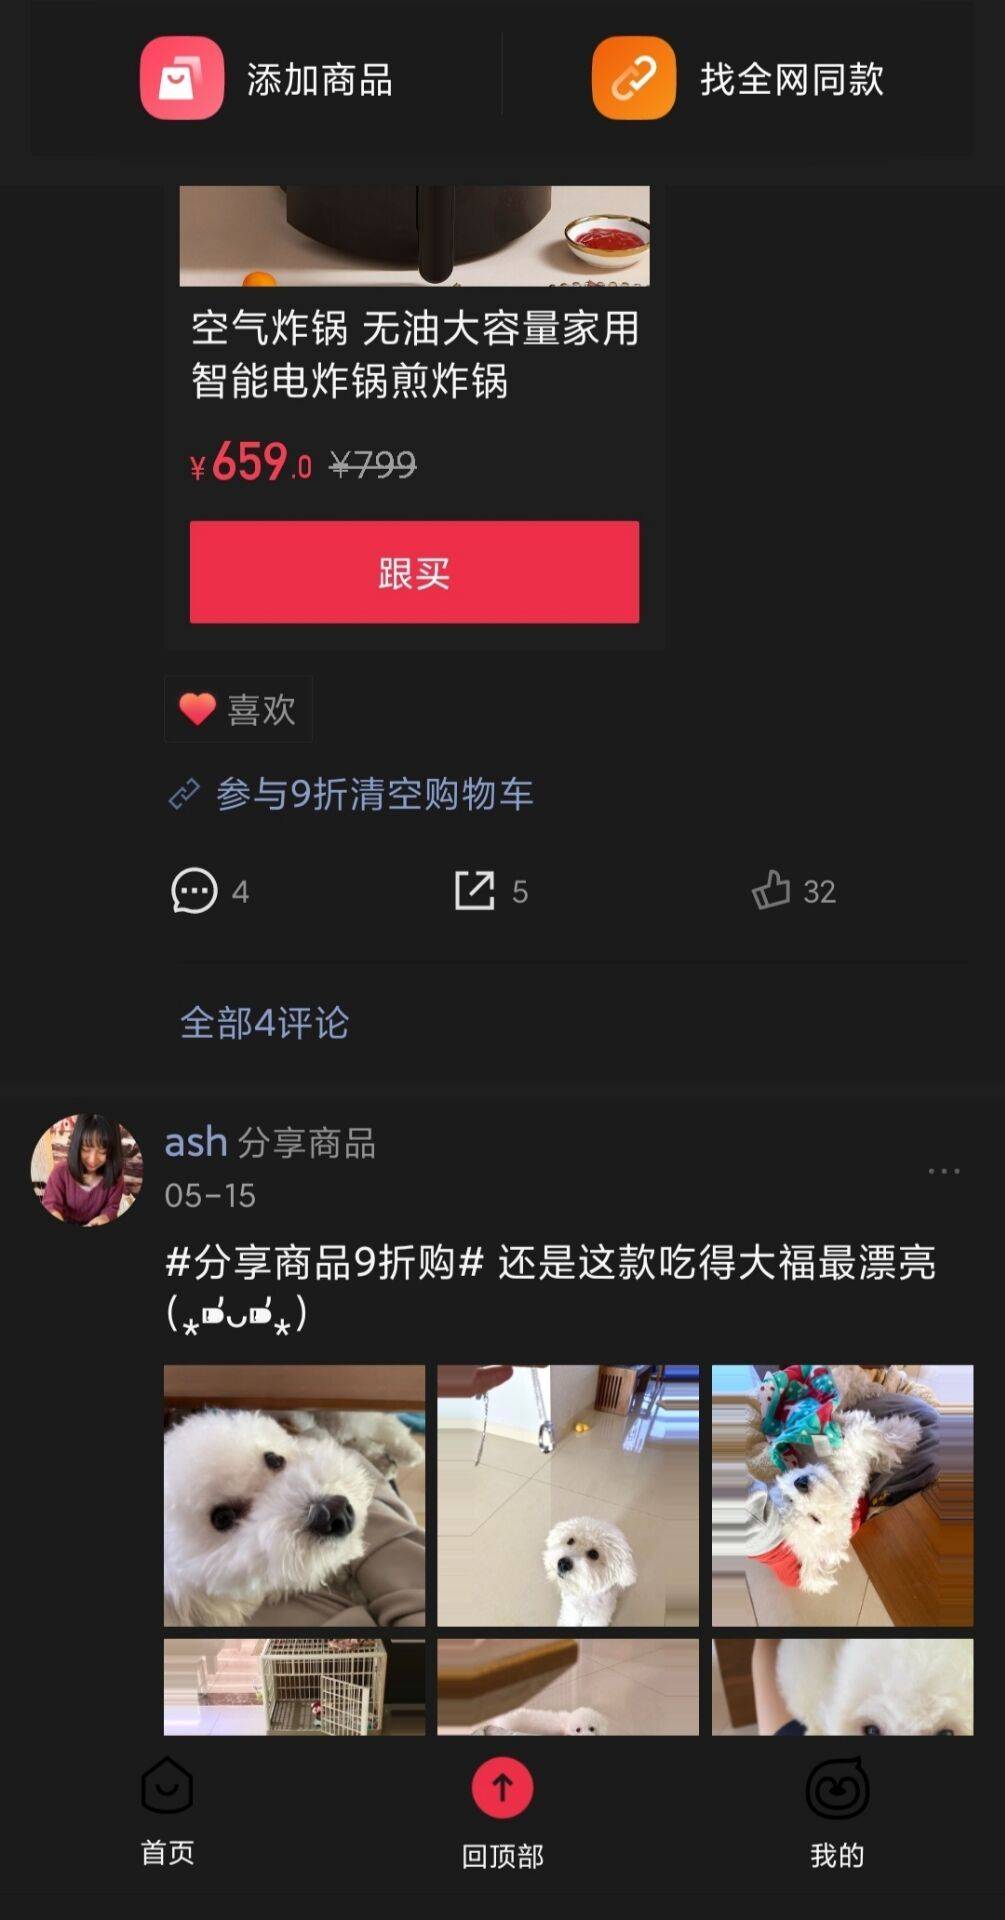 腾讯上线自营电商App“小鹅拼拼”抢滩社交电商赛道